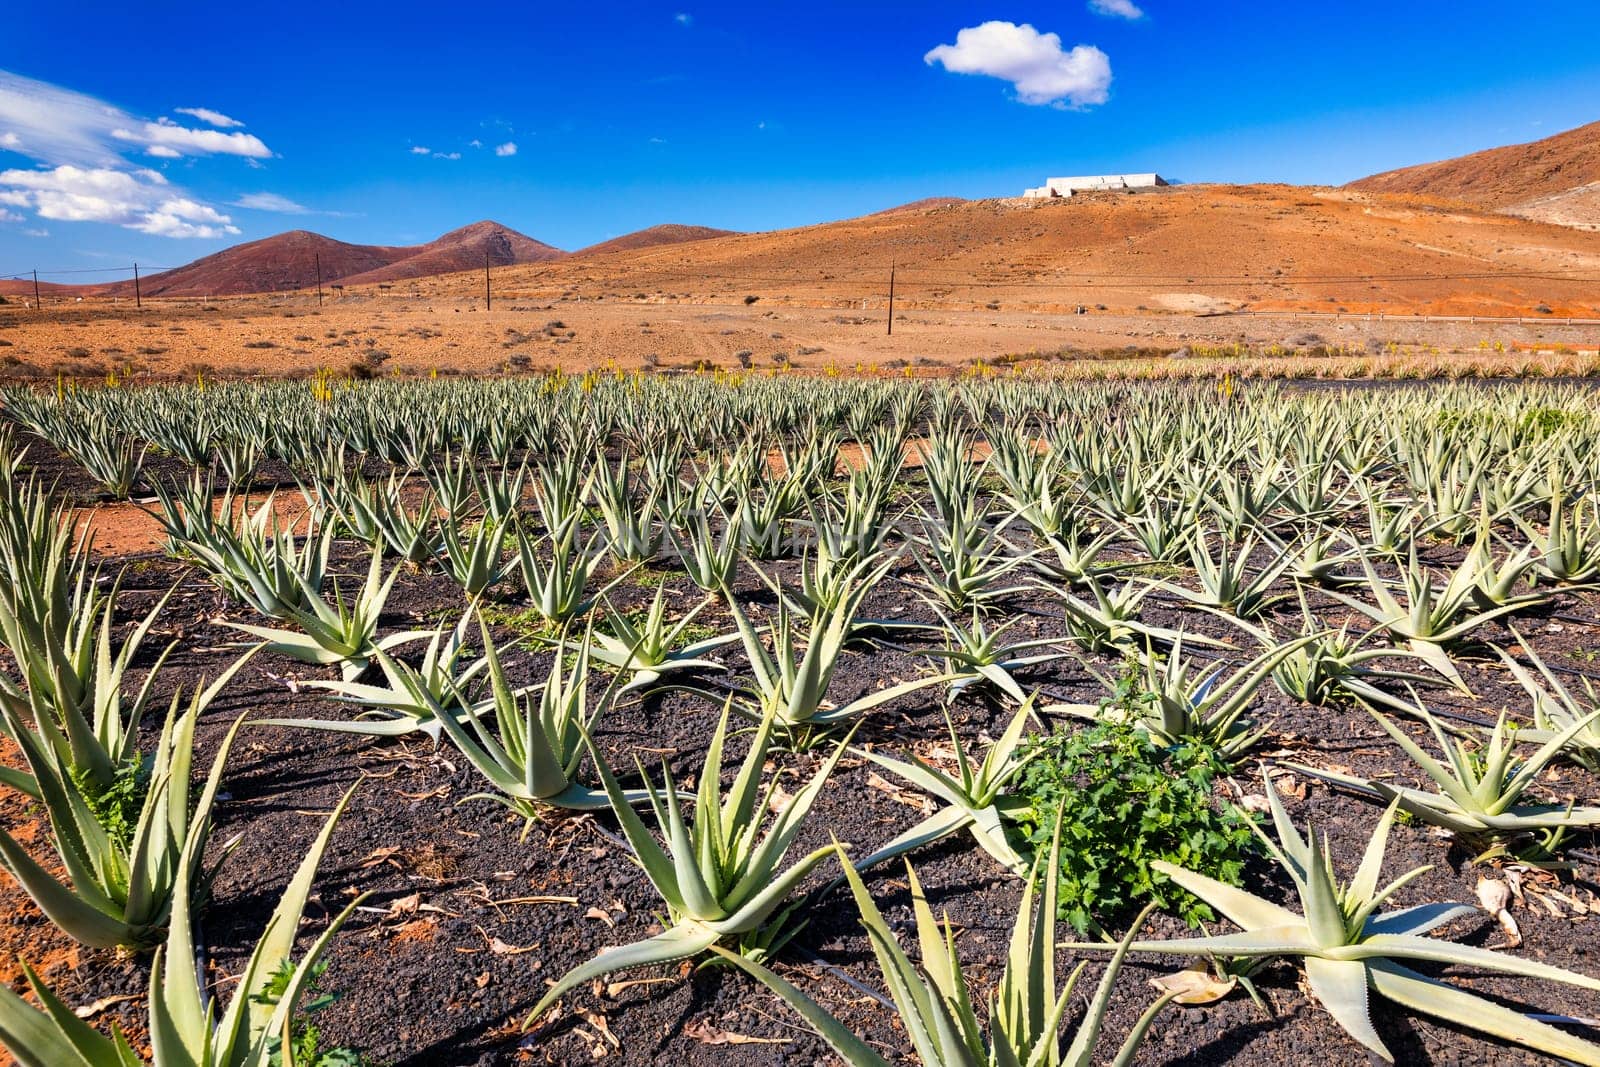 Aloe vera plant. Aloe vera plantation. Fuerteventura, Canary Islands, Spain. Aloe Vera growing on the Island of Fuerteventura in the Canary Islands, Spain. Aloe vera plantation in the Canary Islands. by DaLiu